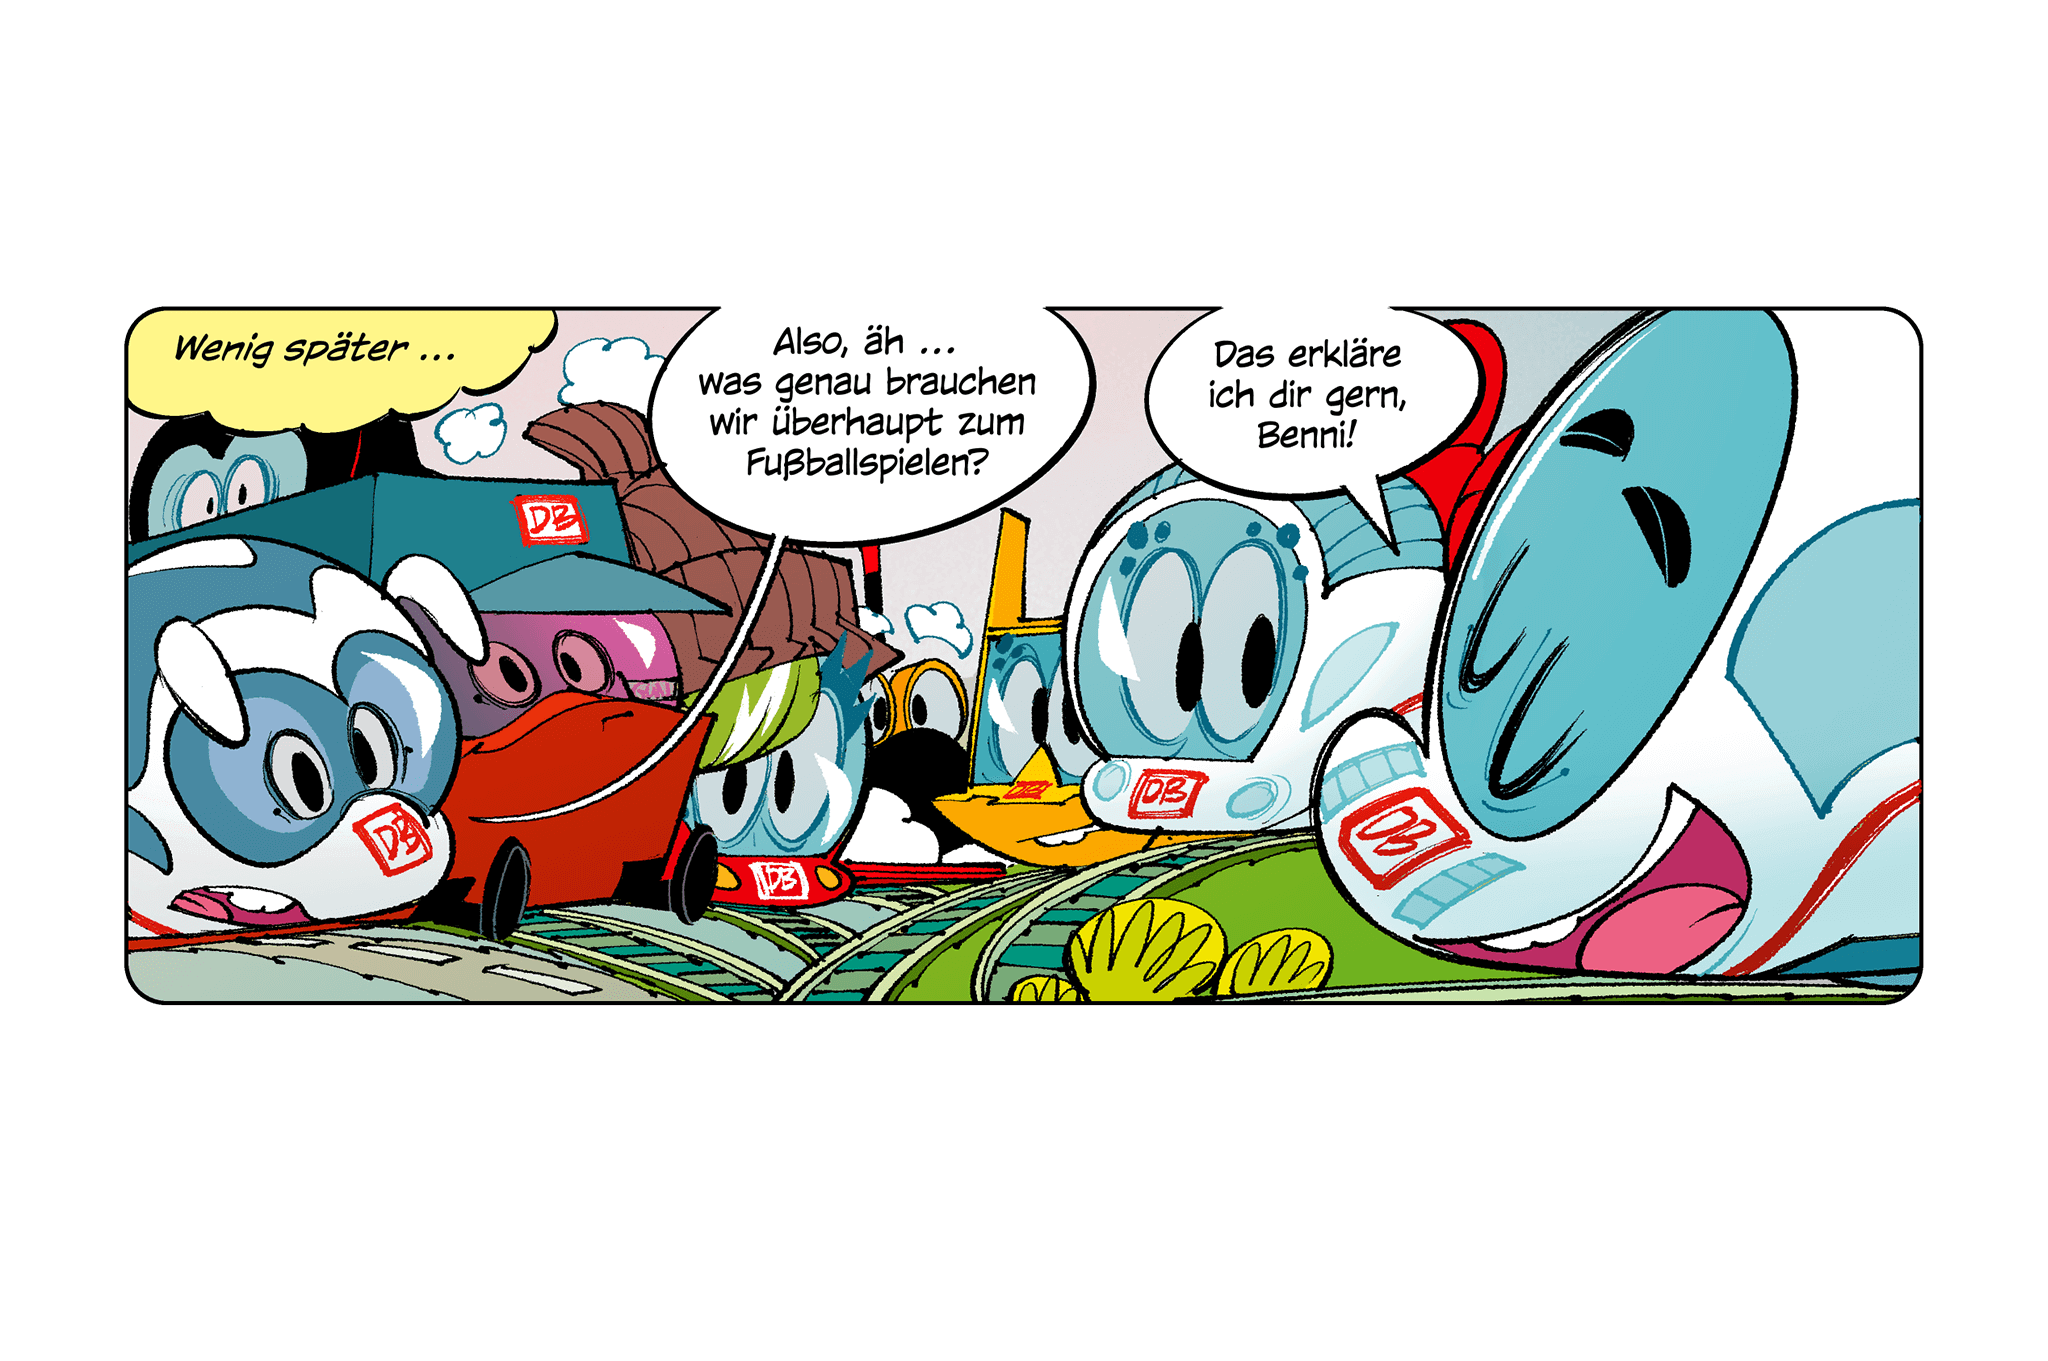 Comicfiguren Der kleine ICE und seine Freunde sprechen über Fußball